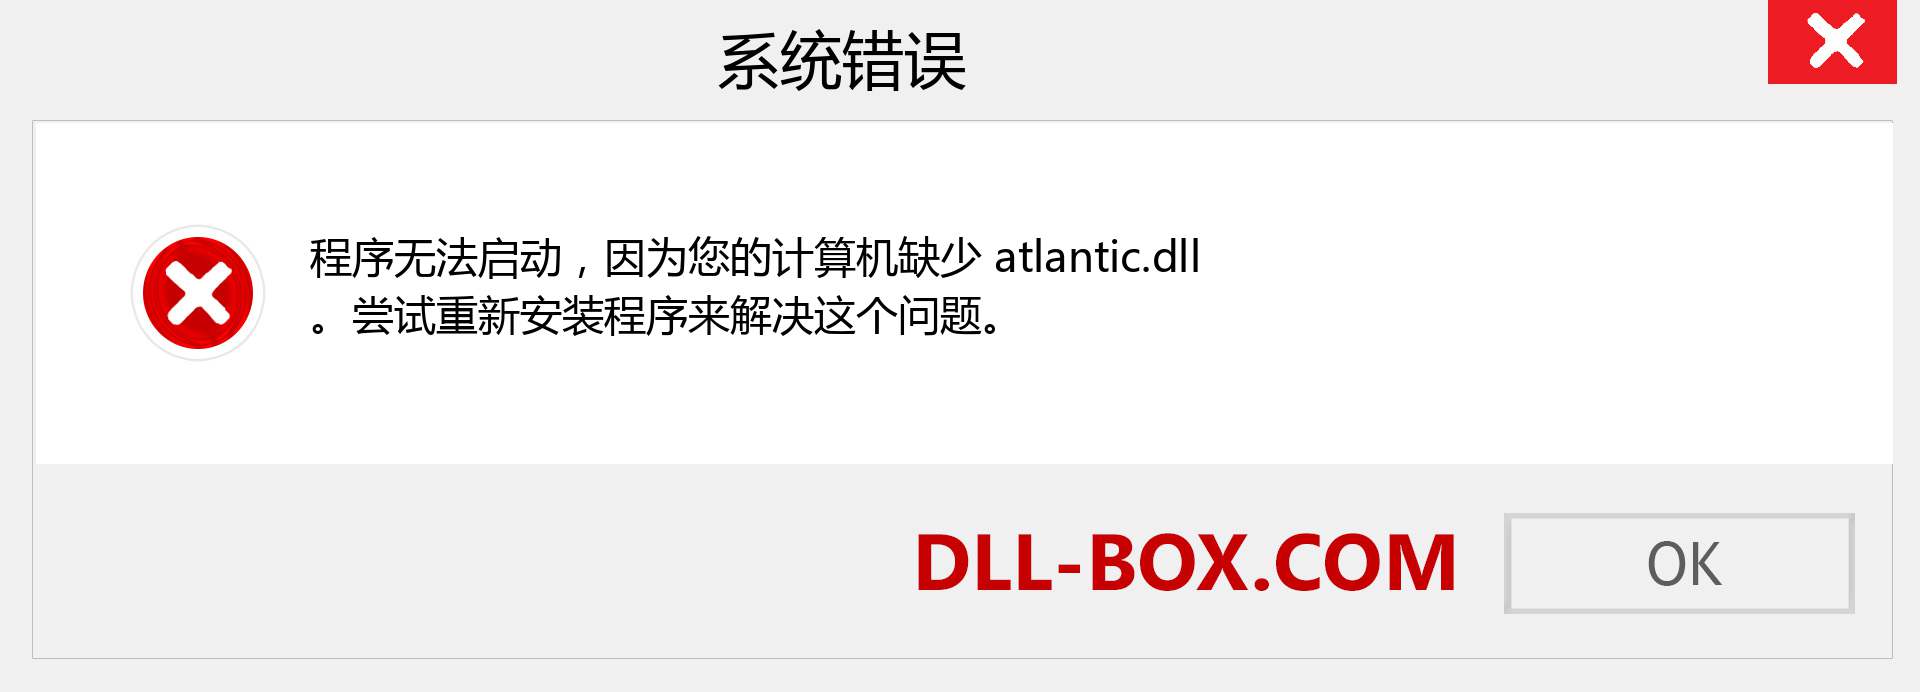 atlantic.dll 文件丢失？。 适用于 Windows 7、8、10 的下载 - 修复 Windows、照片、图像上的 atlantic dll 丢失错误